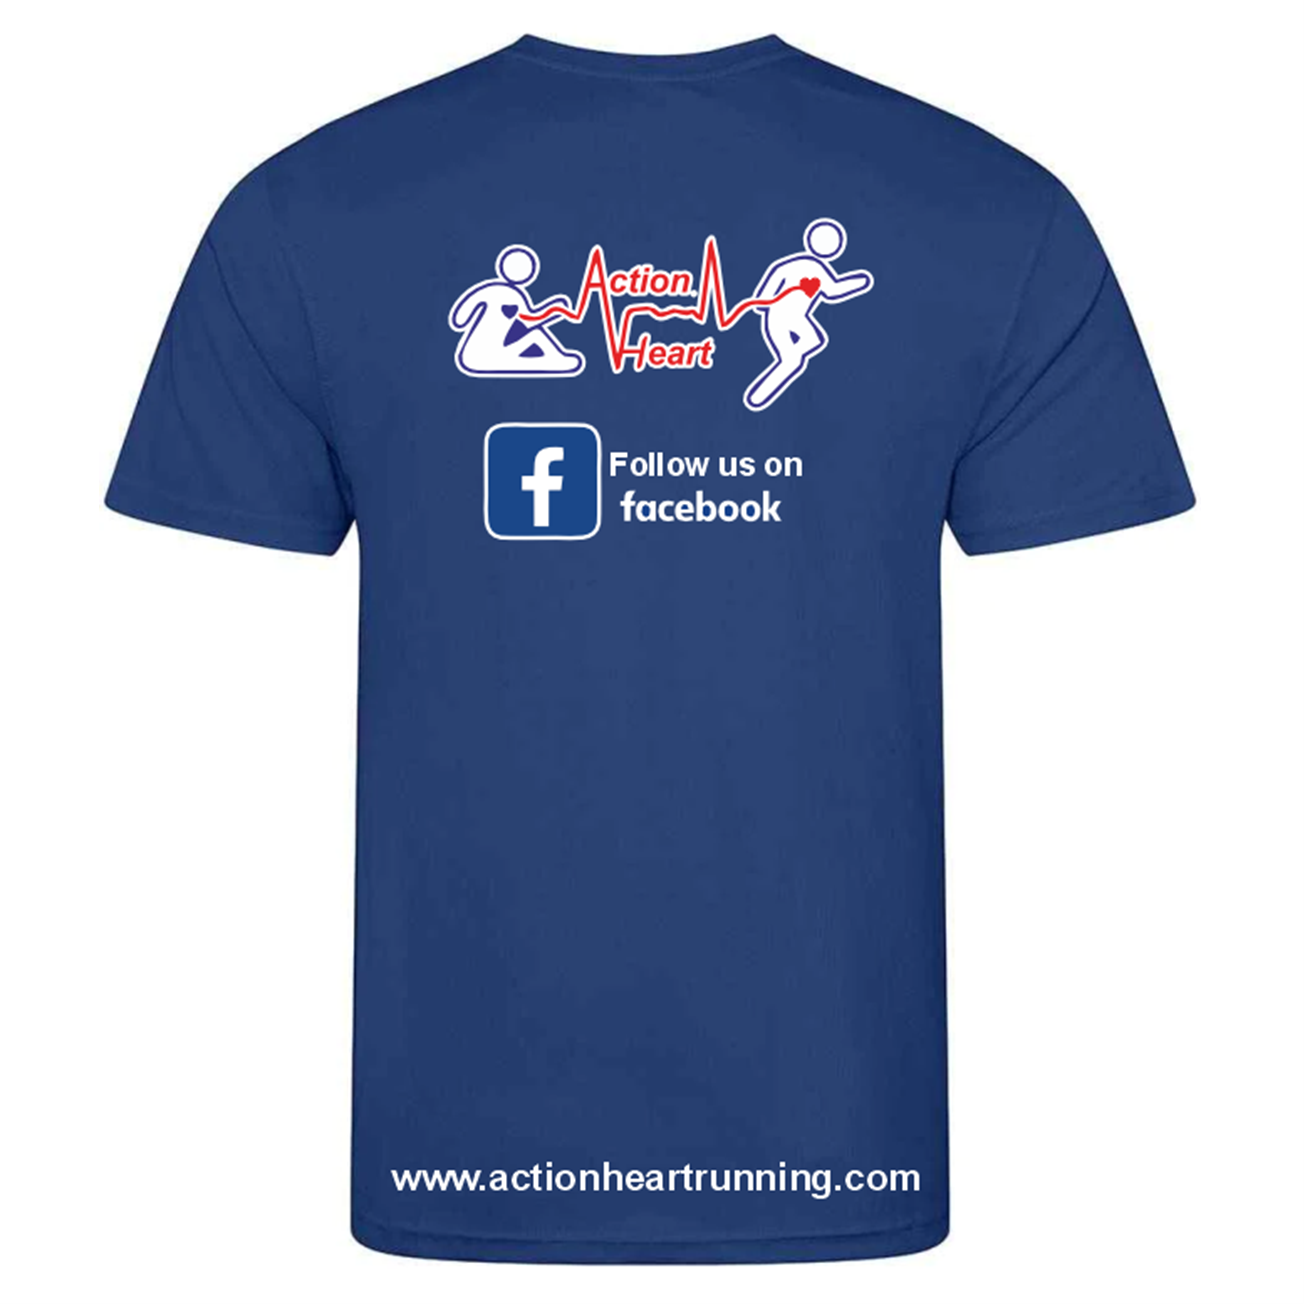 Action Heart Running Club T-Shirt